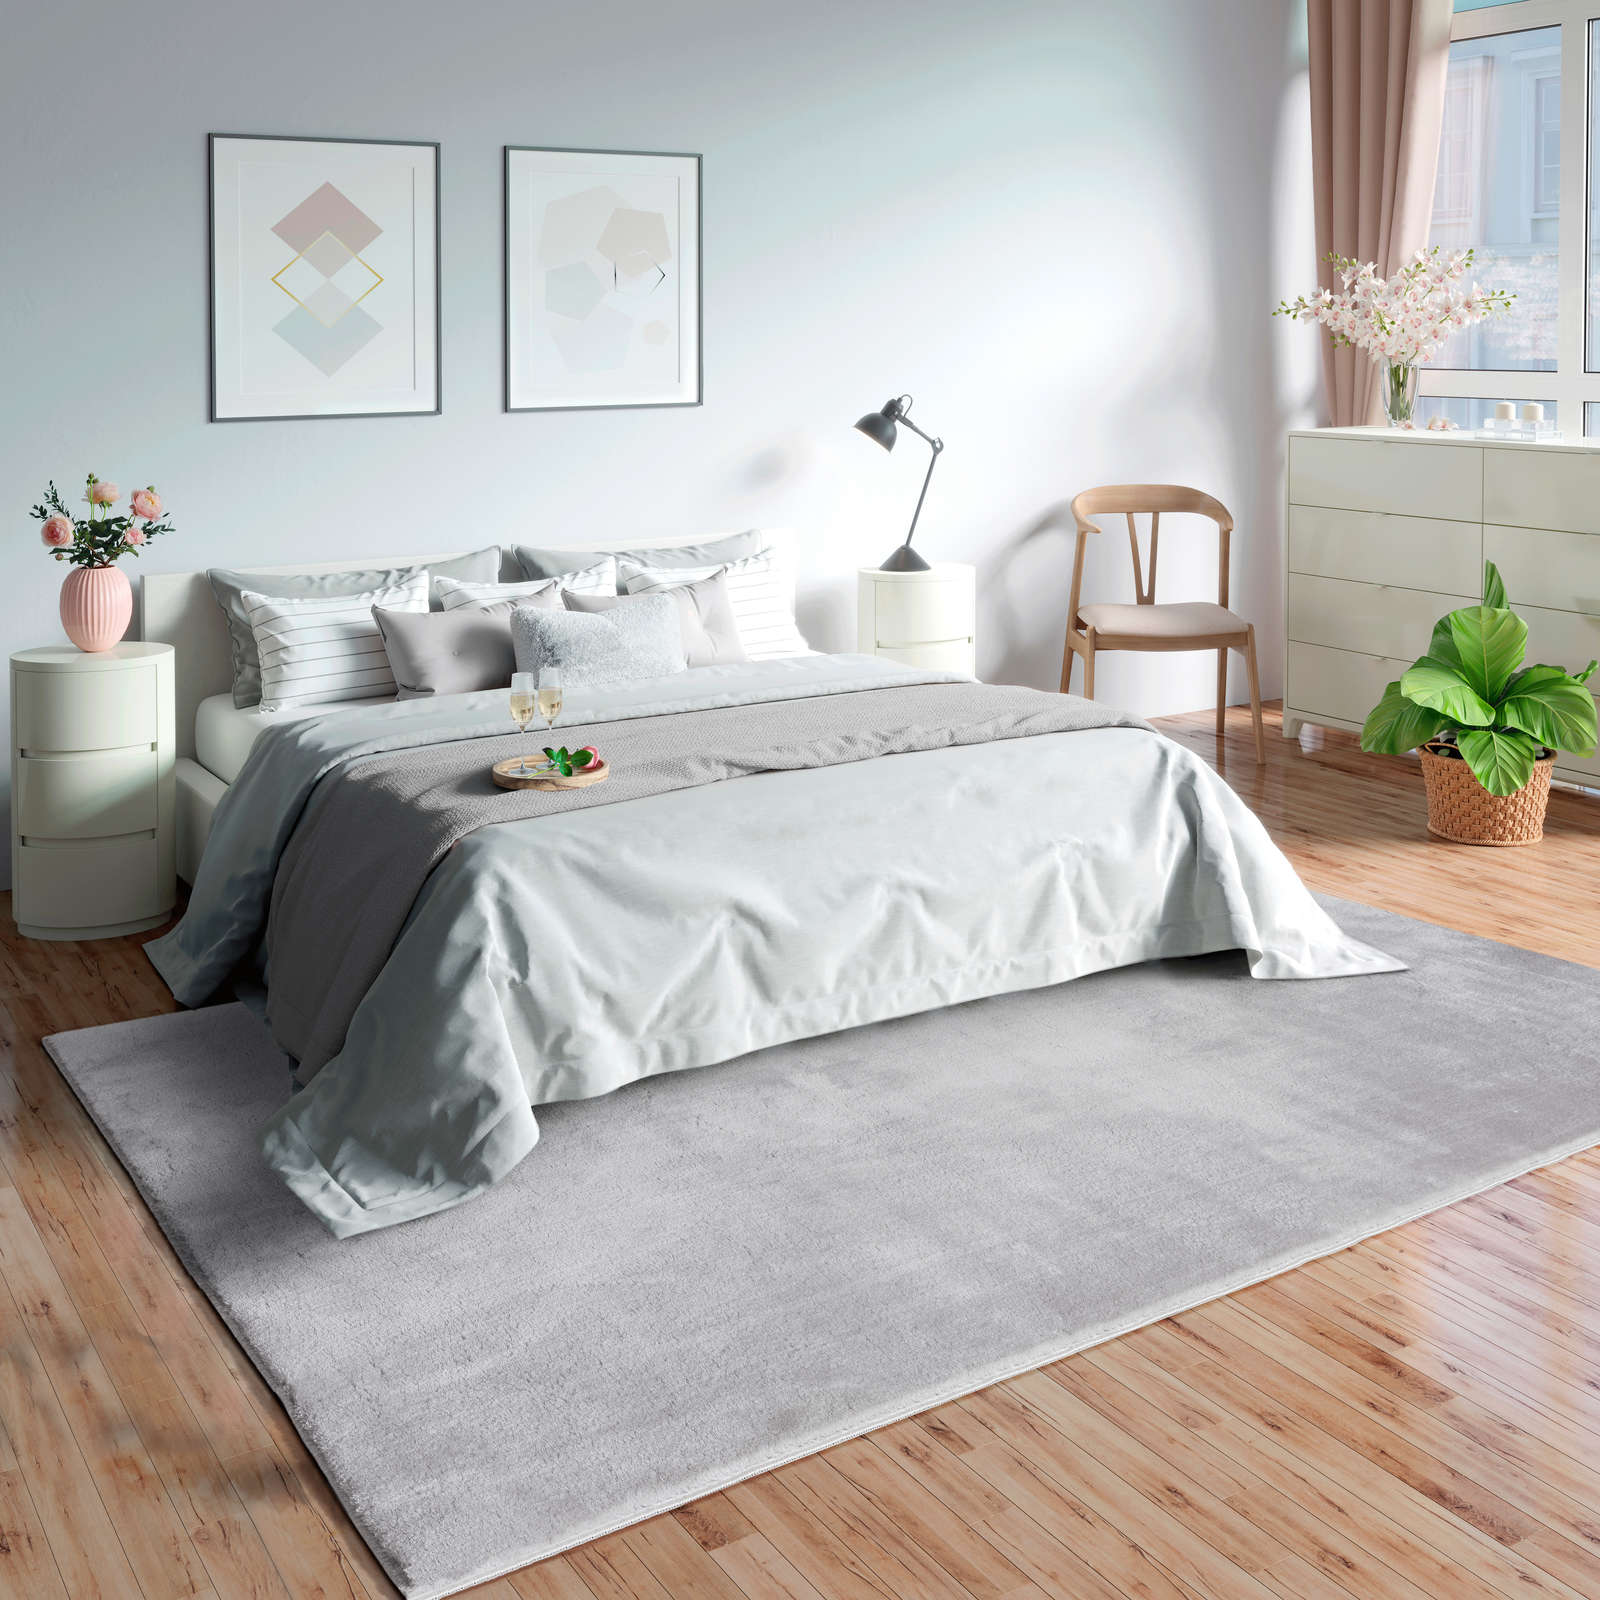             Fijn hoogpolig tapijt in grijs - 290 x 200 cm
        